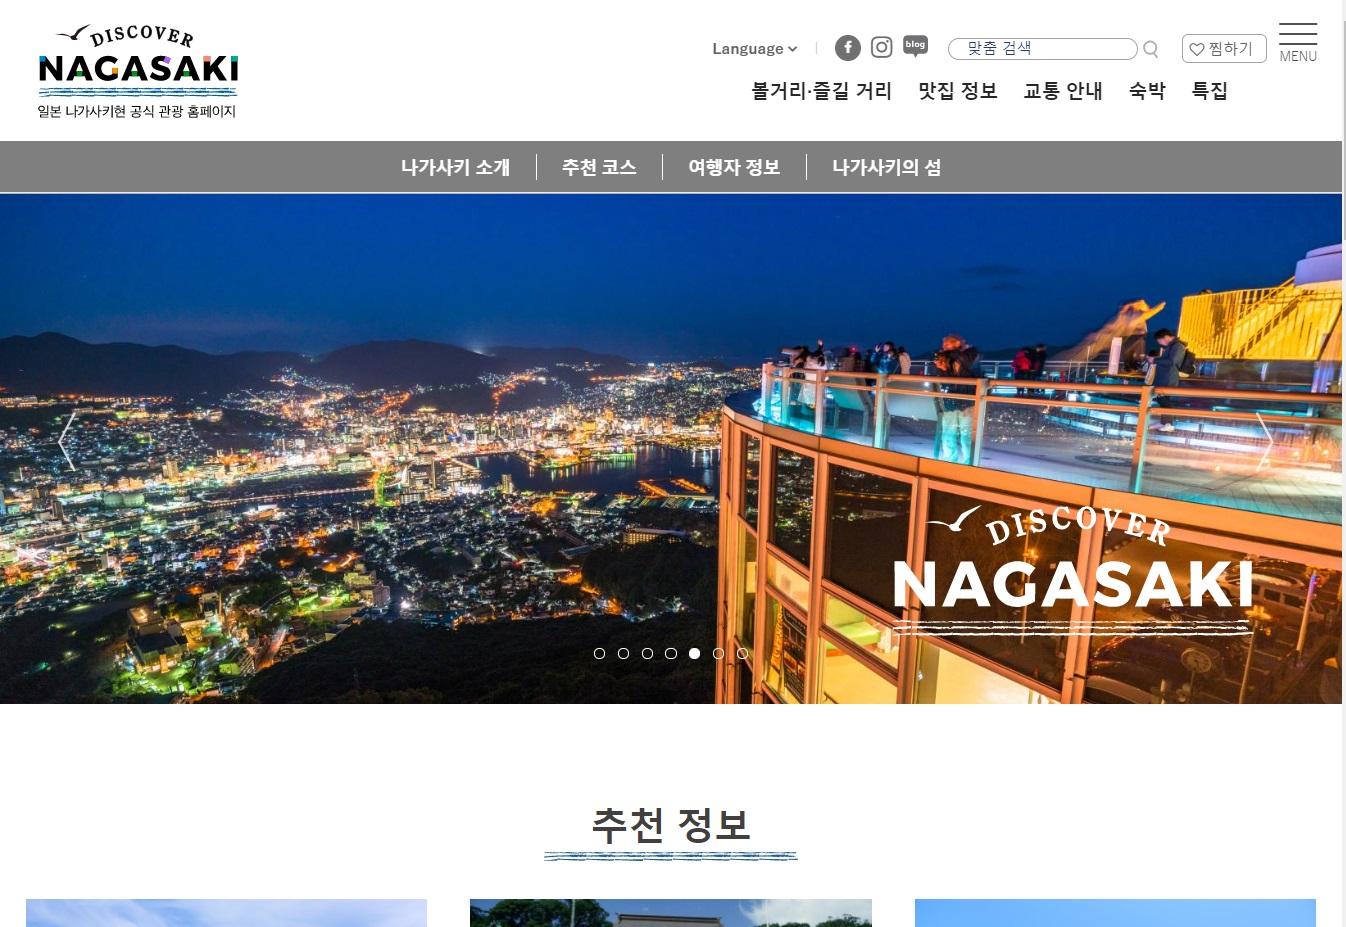 2020년11월30일 일본 나가사키현 공식 관광 홈페이지 ‘Discover Nagasaki’ 를 리뉴얼했습니다.-1